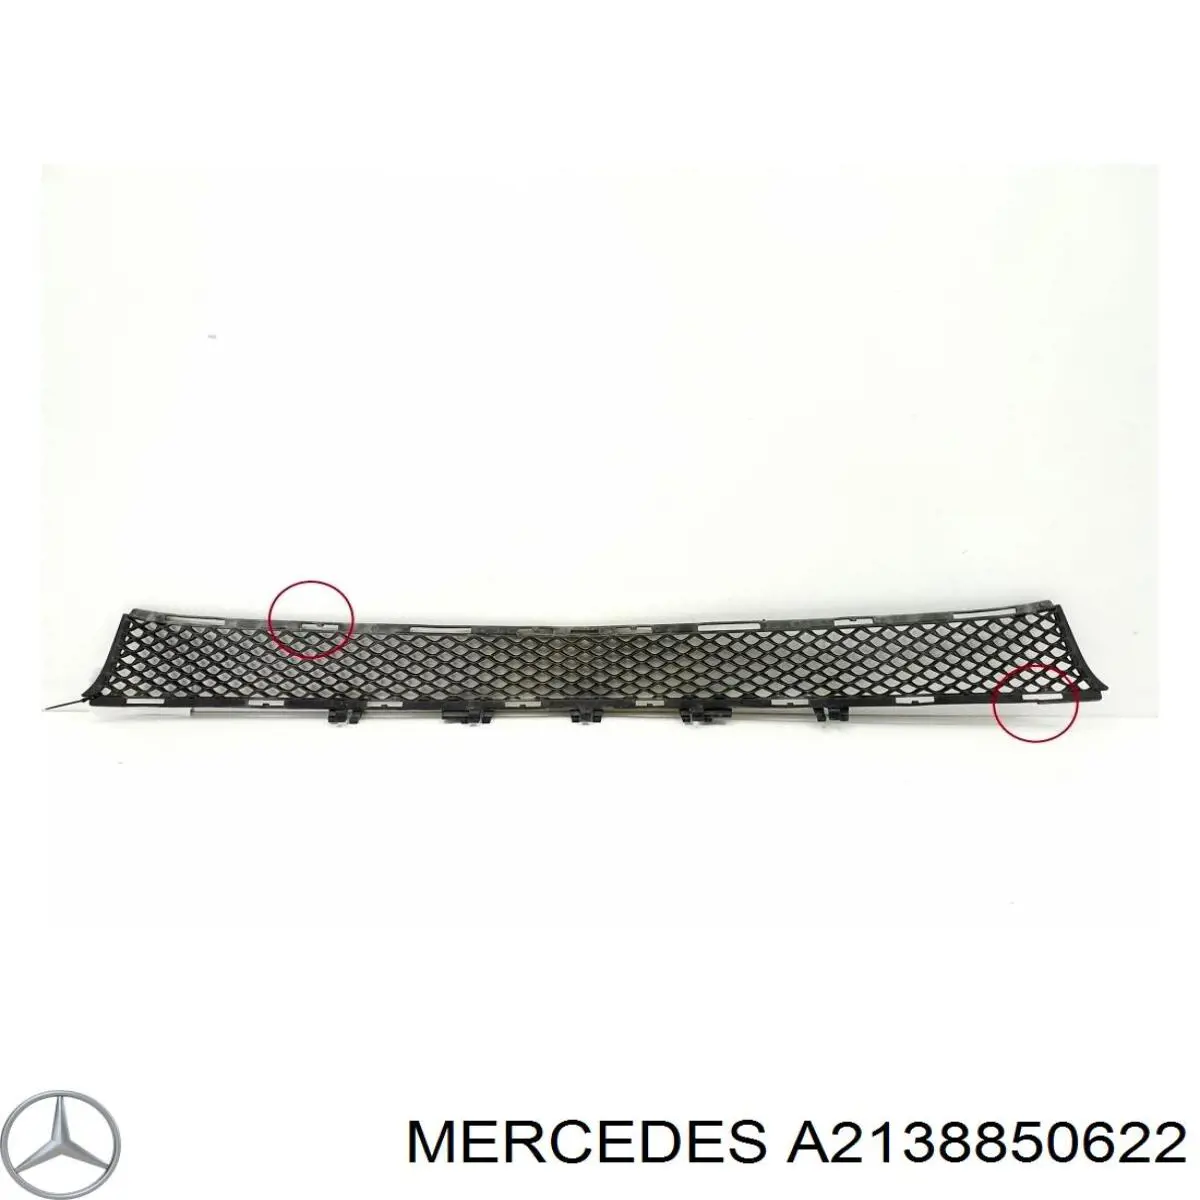 A2138850622 Mercedes rejilla de ventilación, parachoques trasero, central